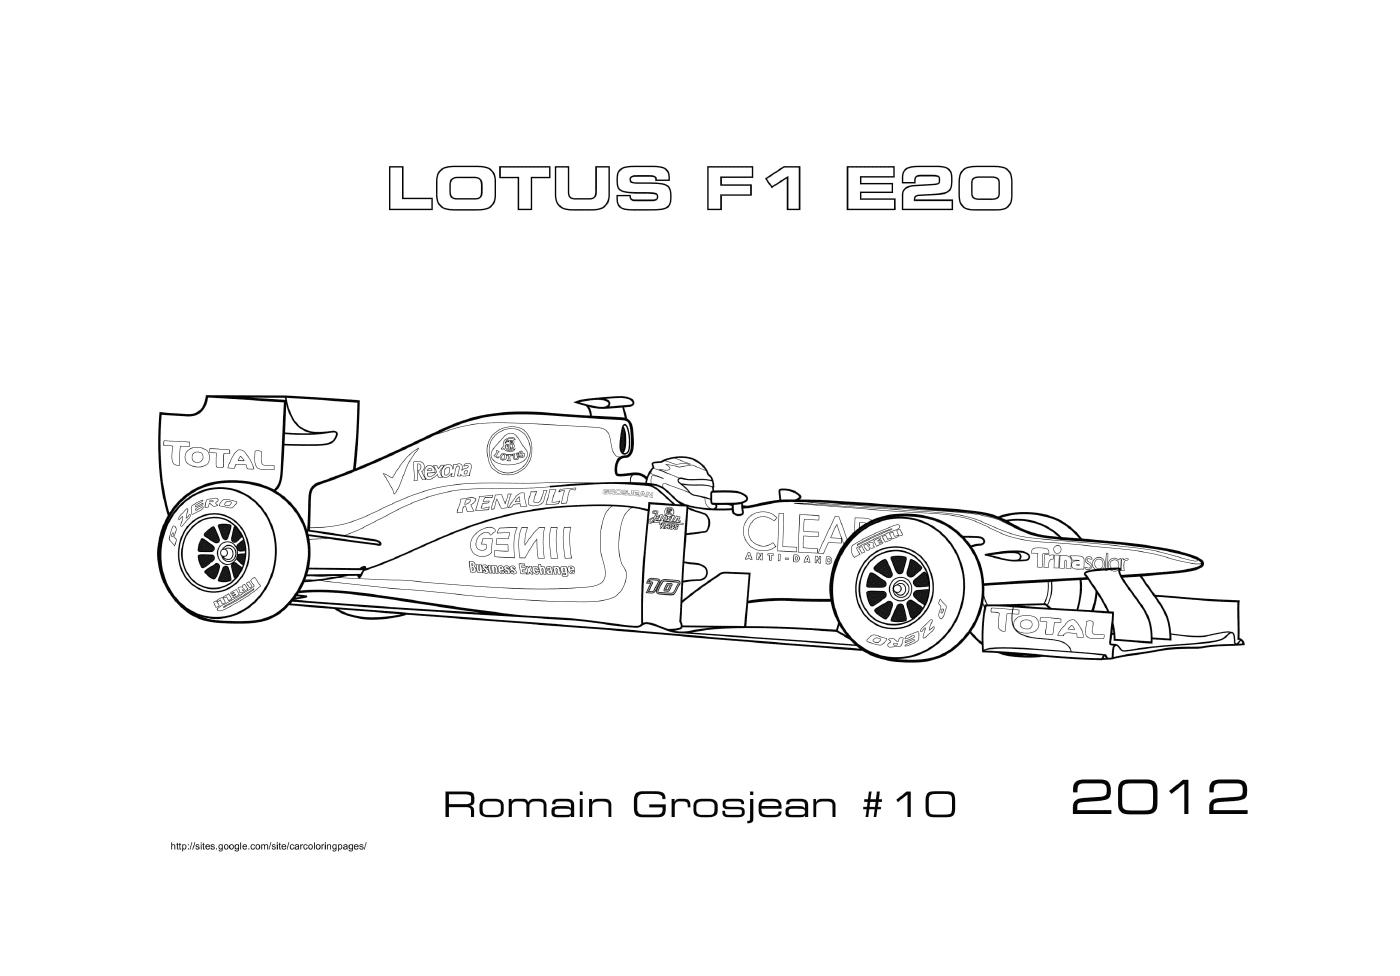  Lotus E20 race car from Romain Grosjean 